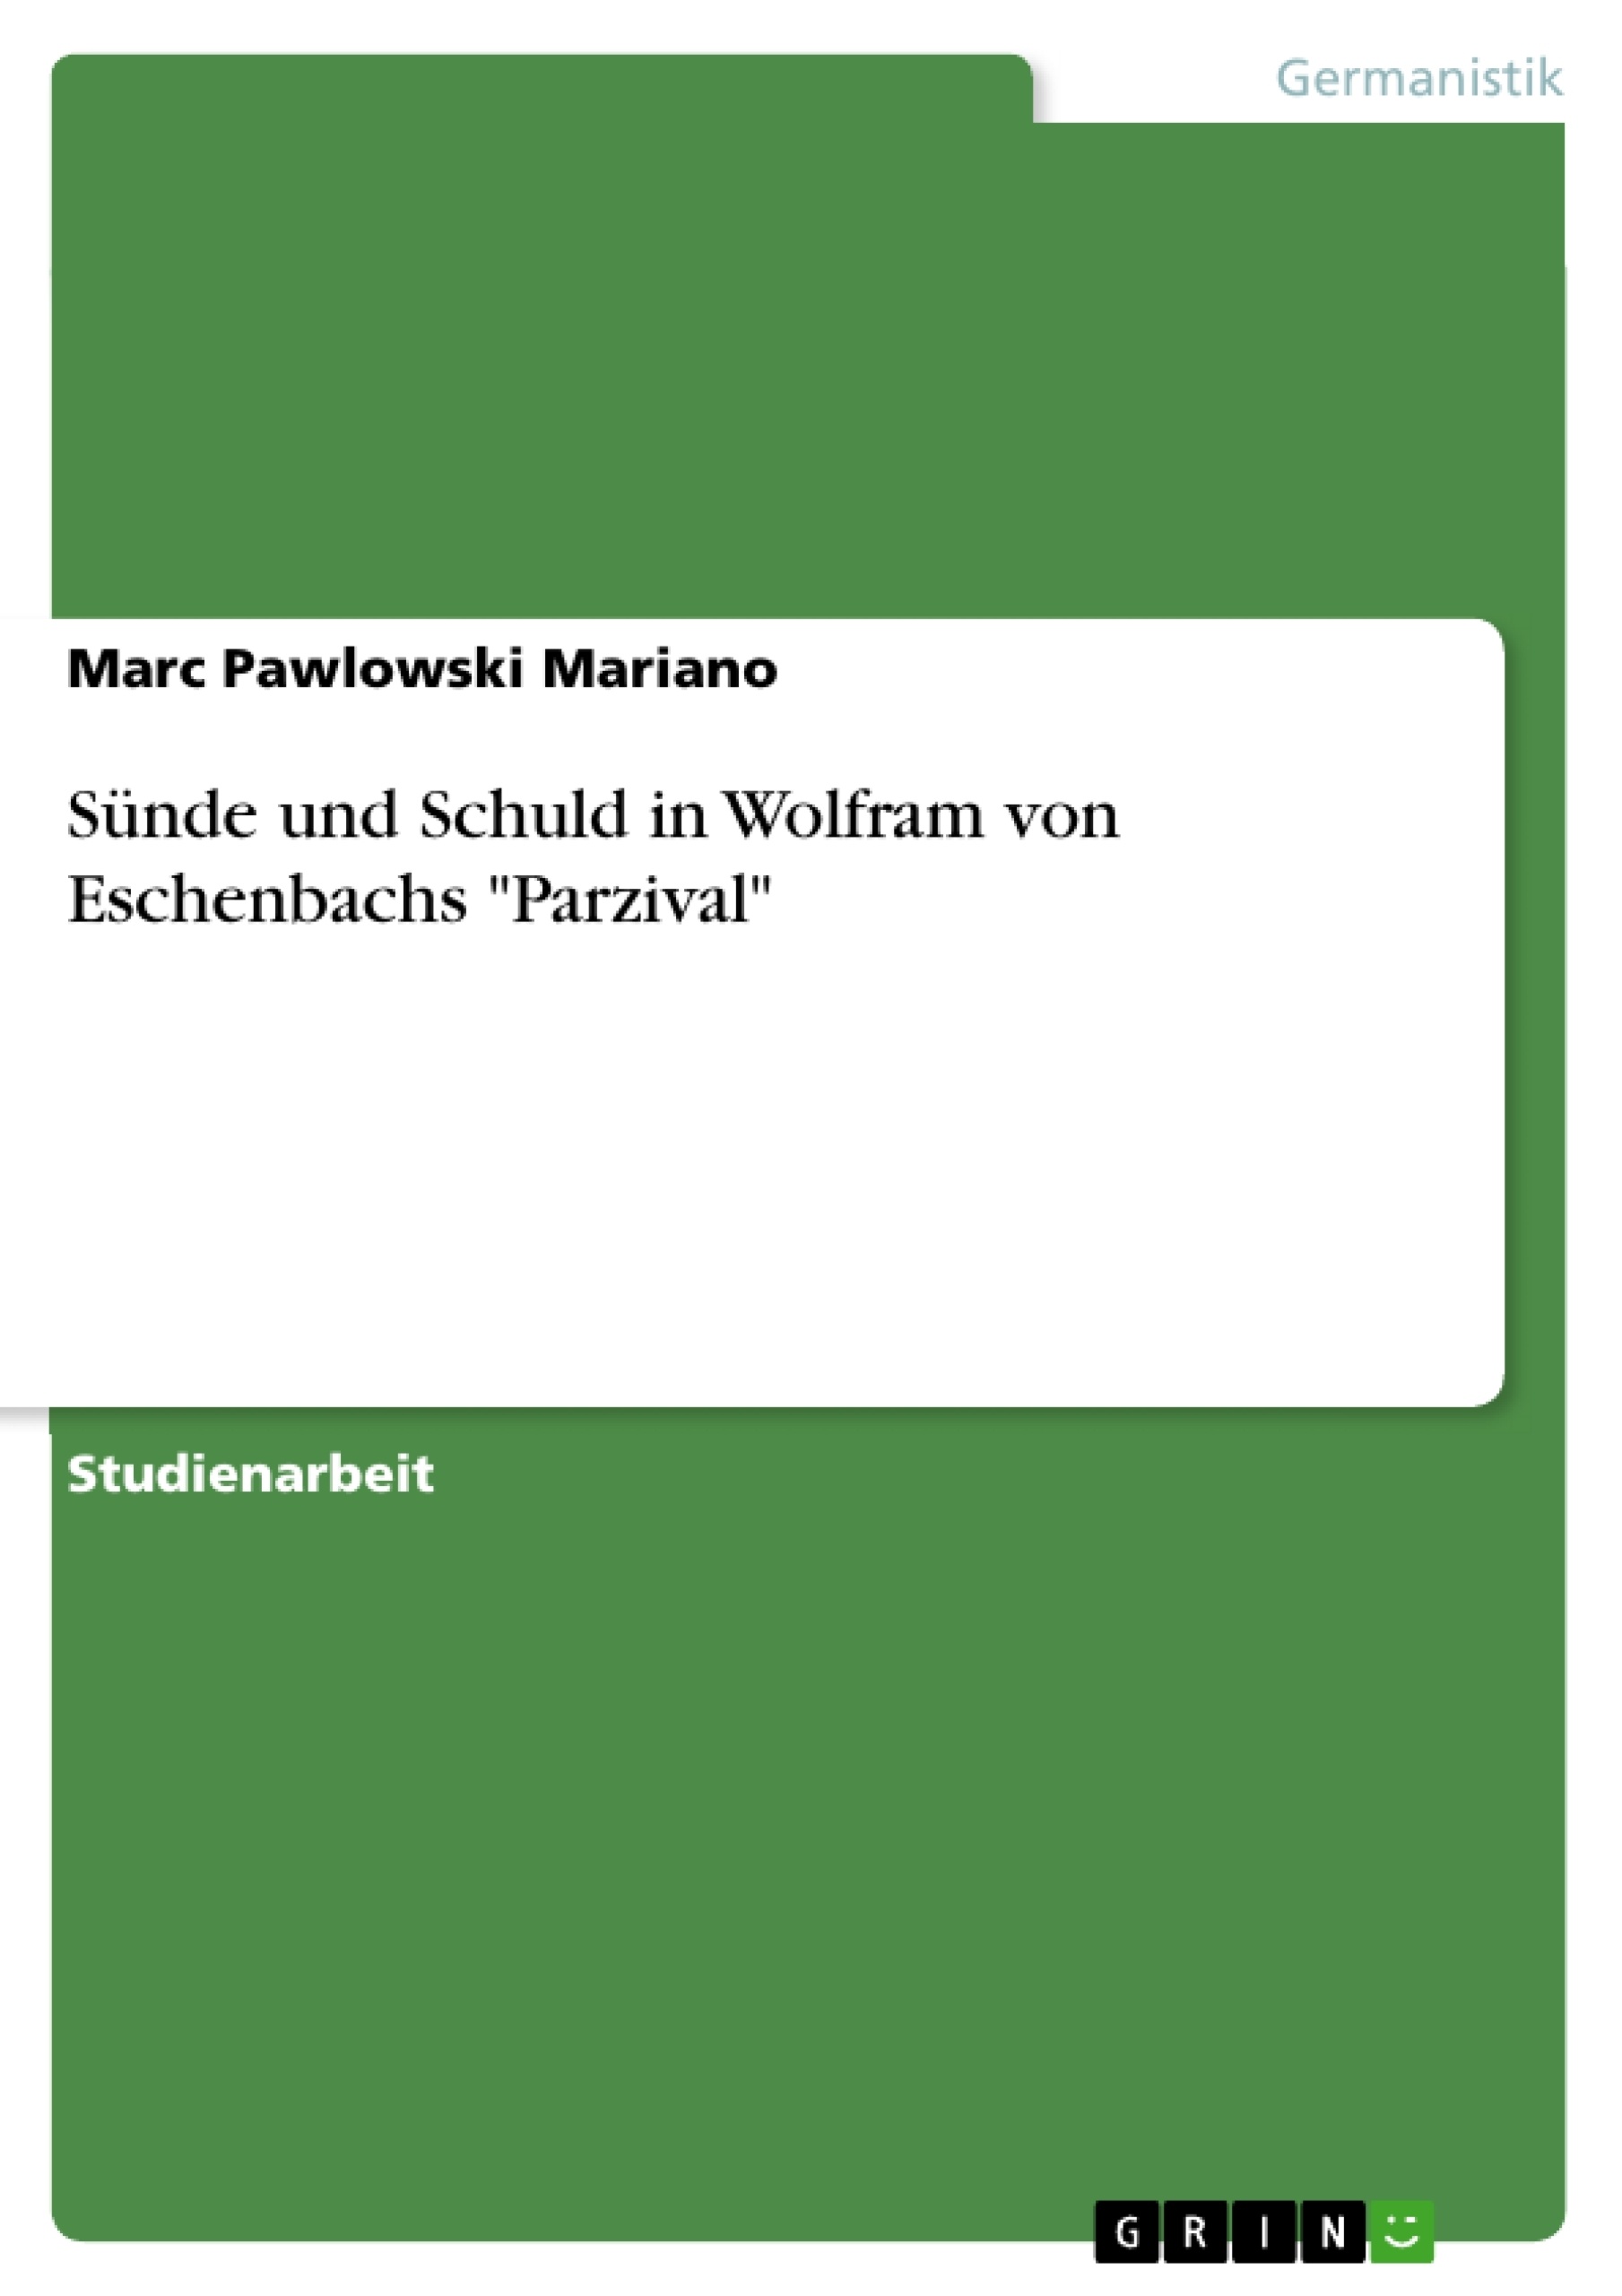 Title: Sünde und Schuld in Wolfram von Eschenbachs "Parzival"